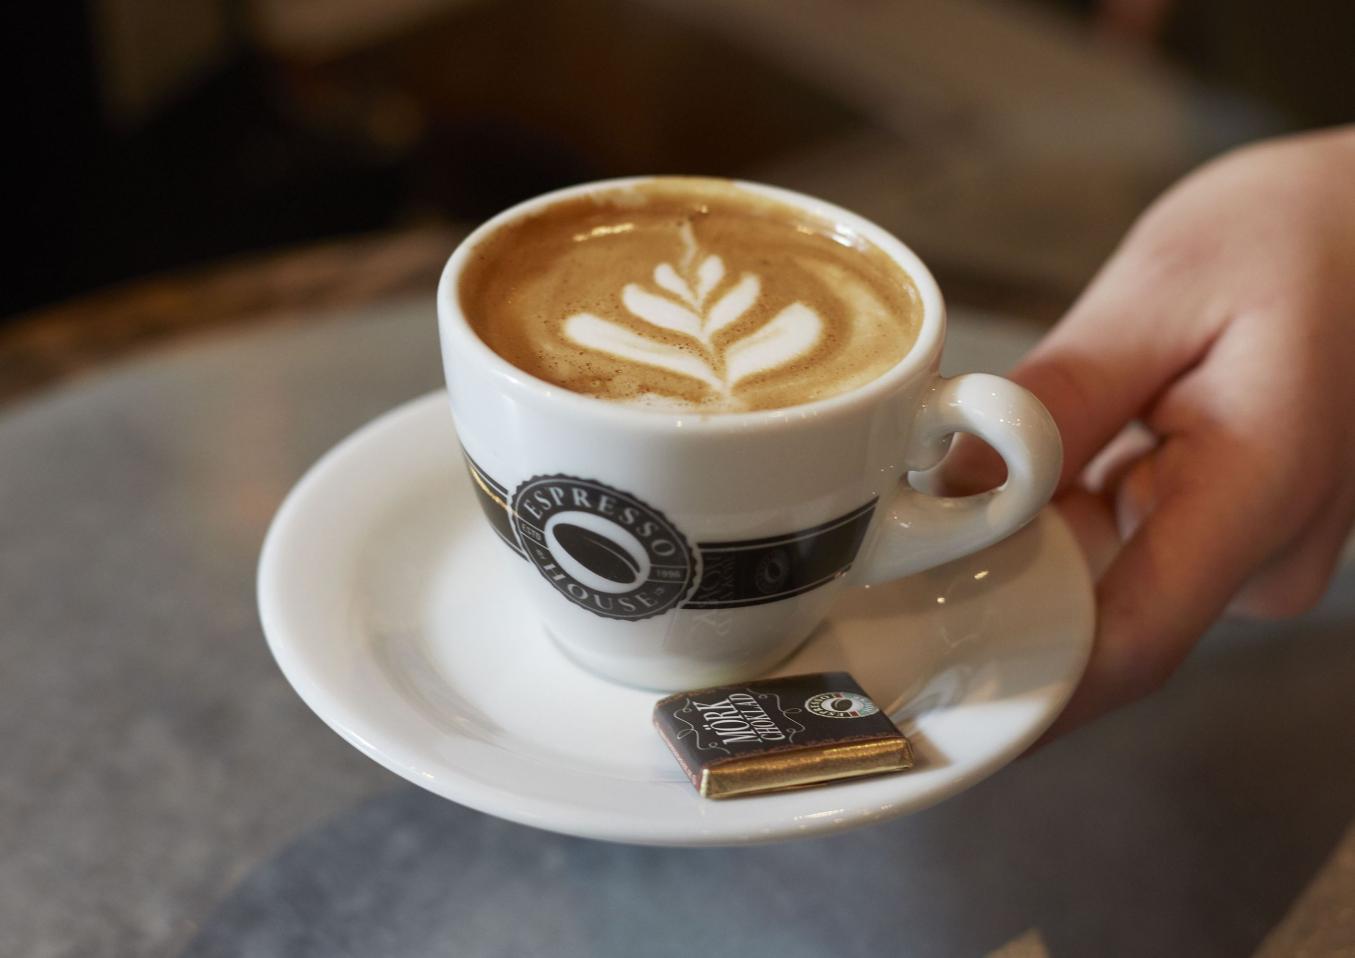 Kuvassa naisen kädessä maitokahviannos valkoisessa kupissa, jonka reunassa Espresso Housen logo. Asetilla ruskeassa kääreessä suklaapala. Kuva lainattu netistä.